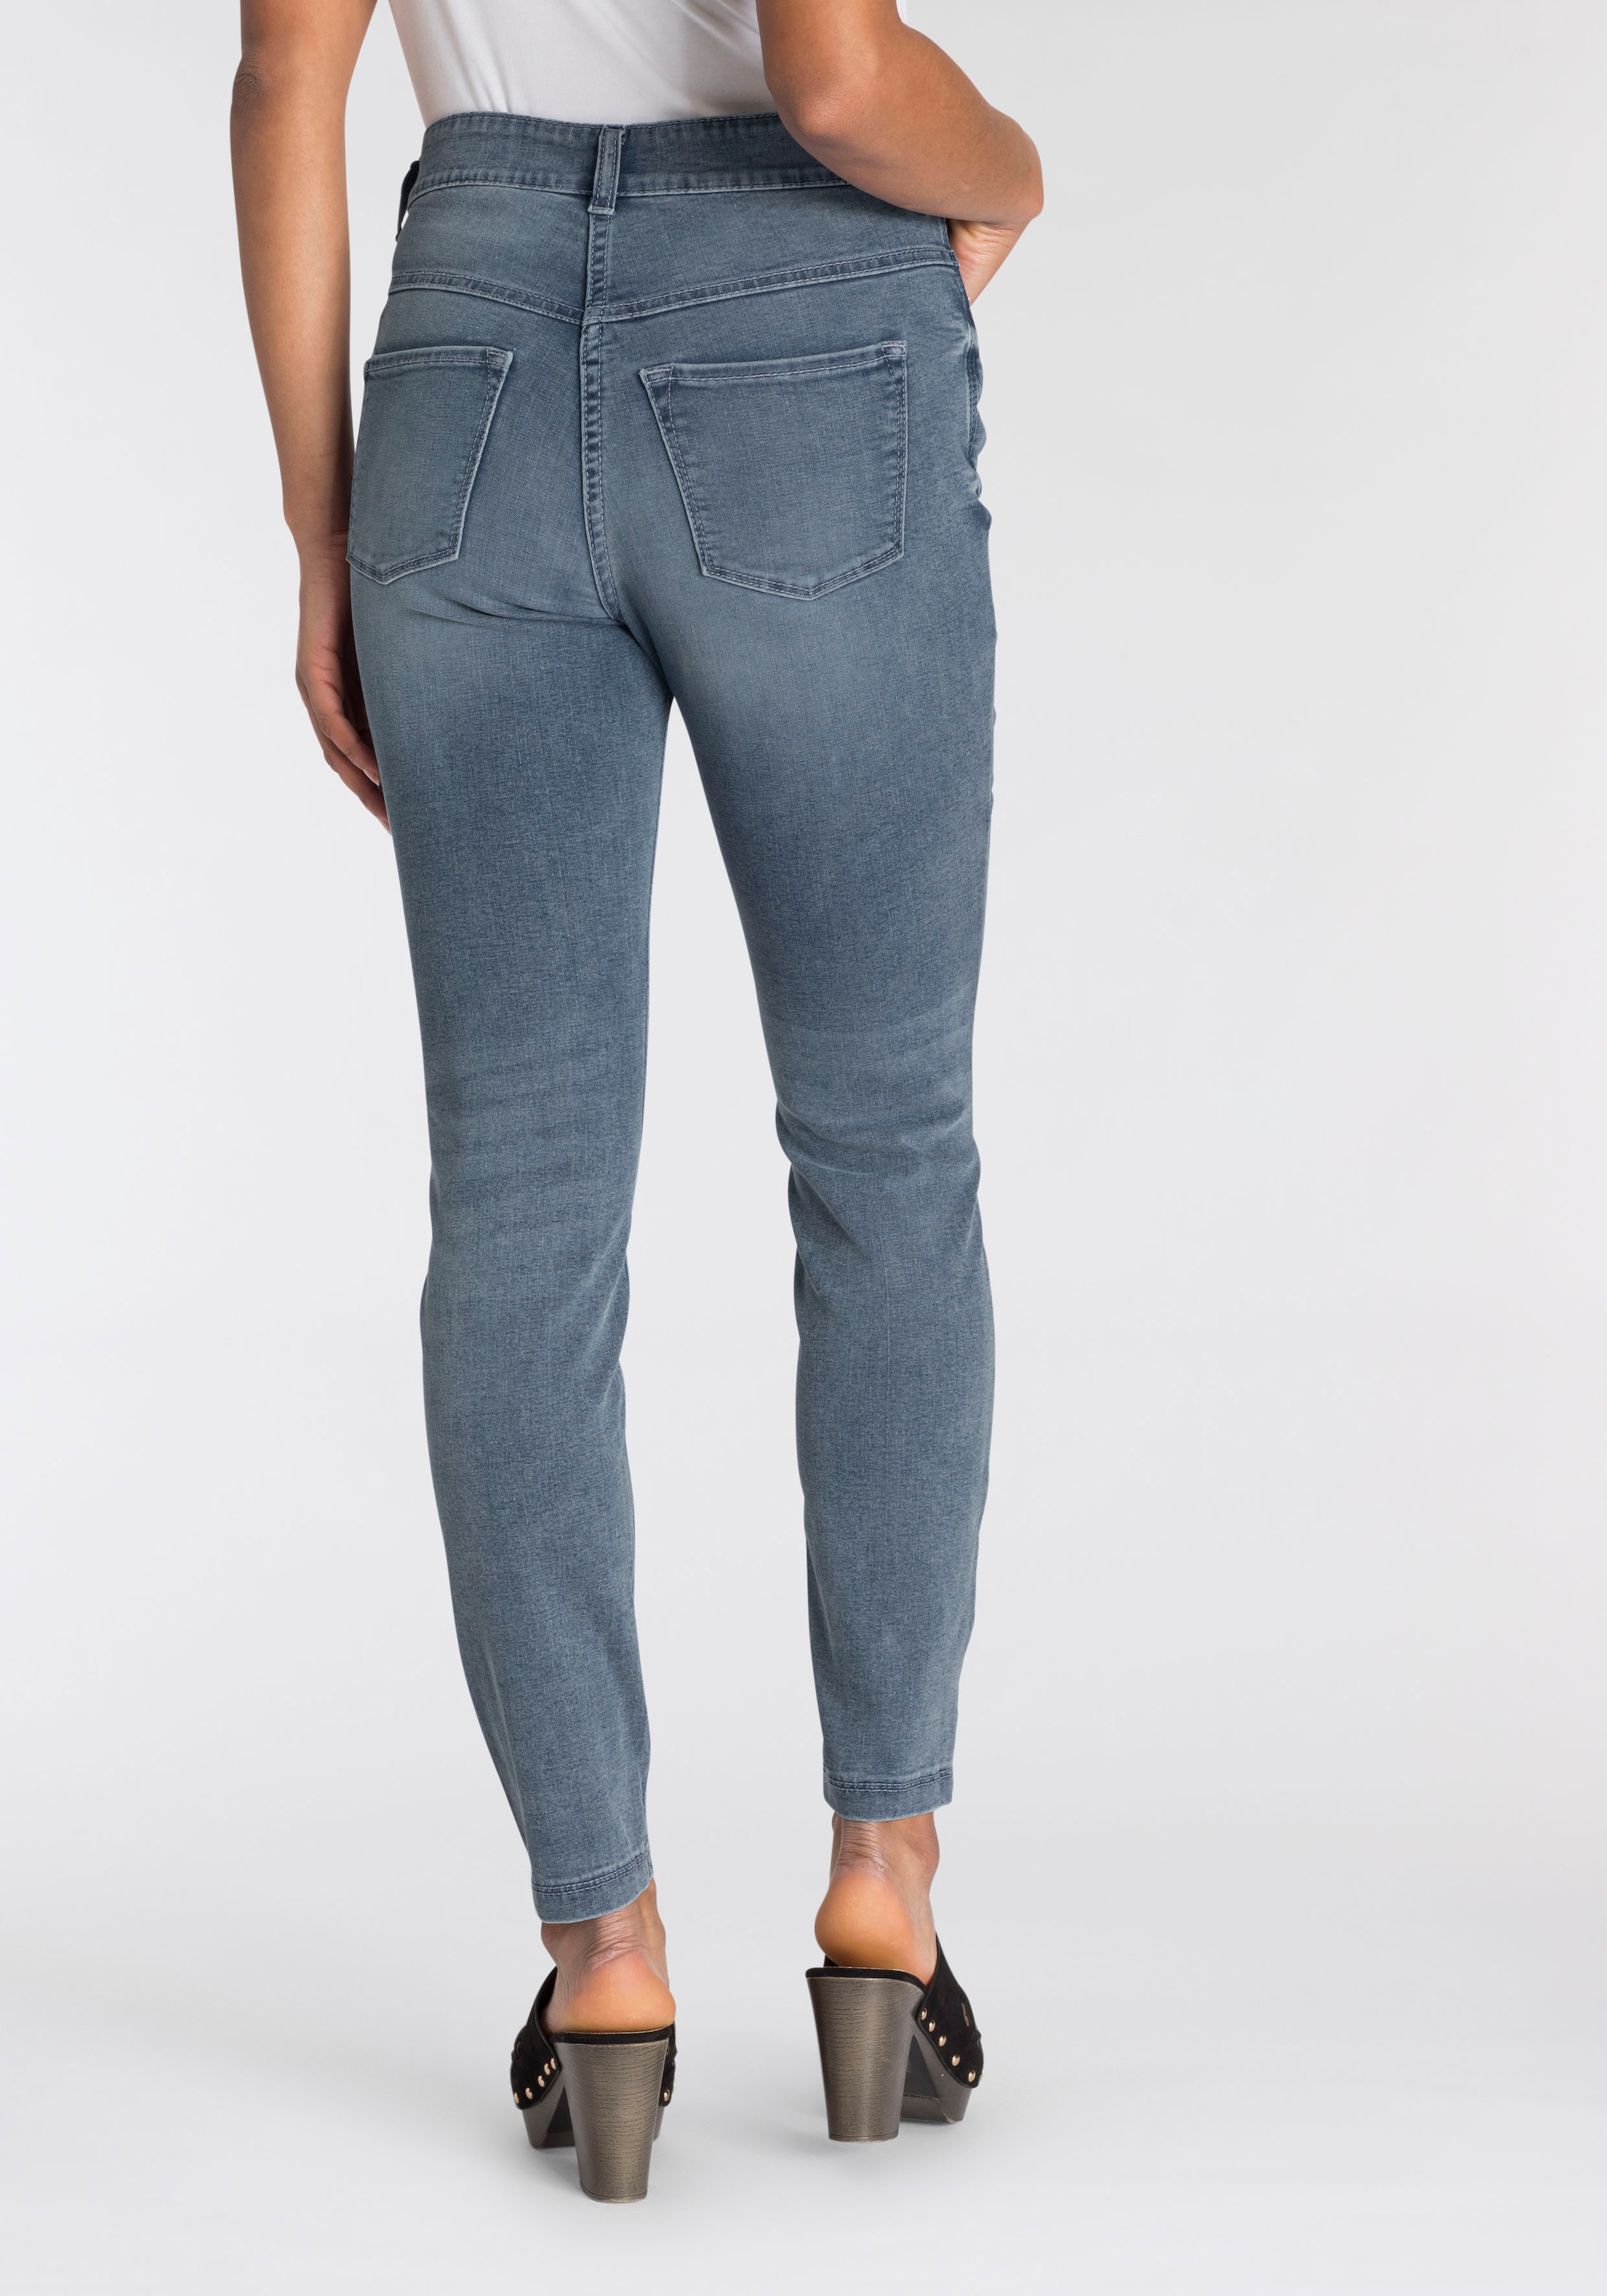 Tag online MAC ganzen sitzt kaufen den bequem Power-Stretch Skinny-fit-Jeans Qualität »Hiperstretch-Skinny«,